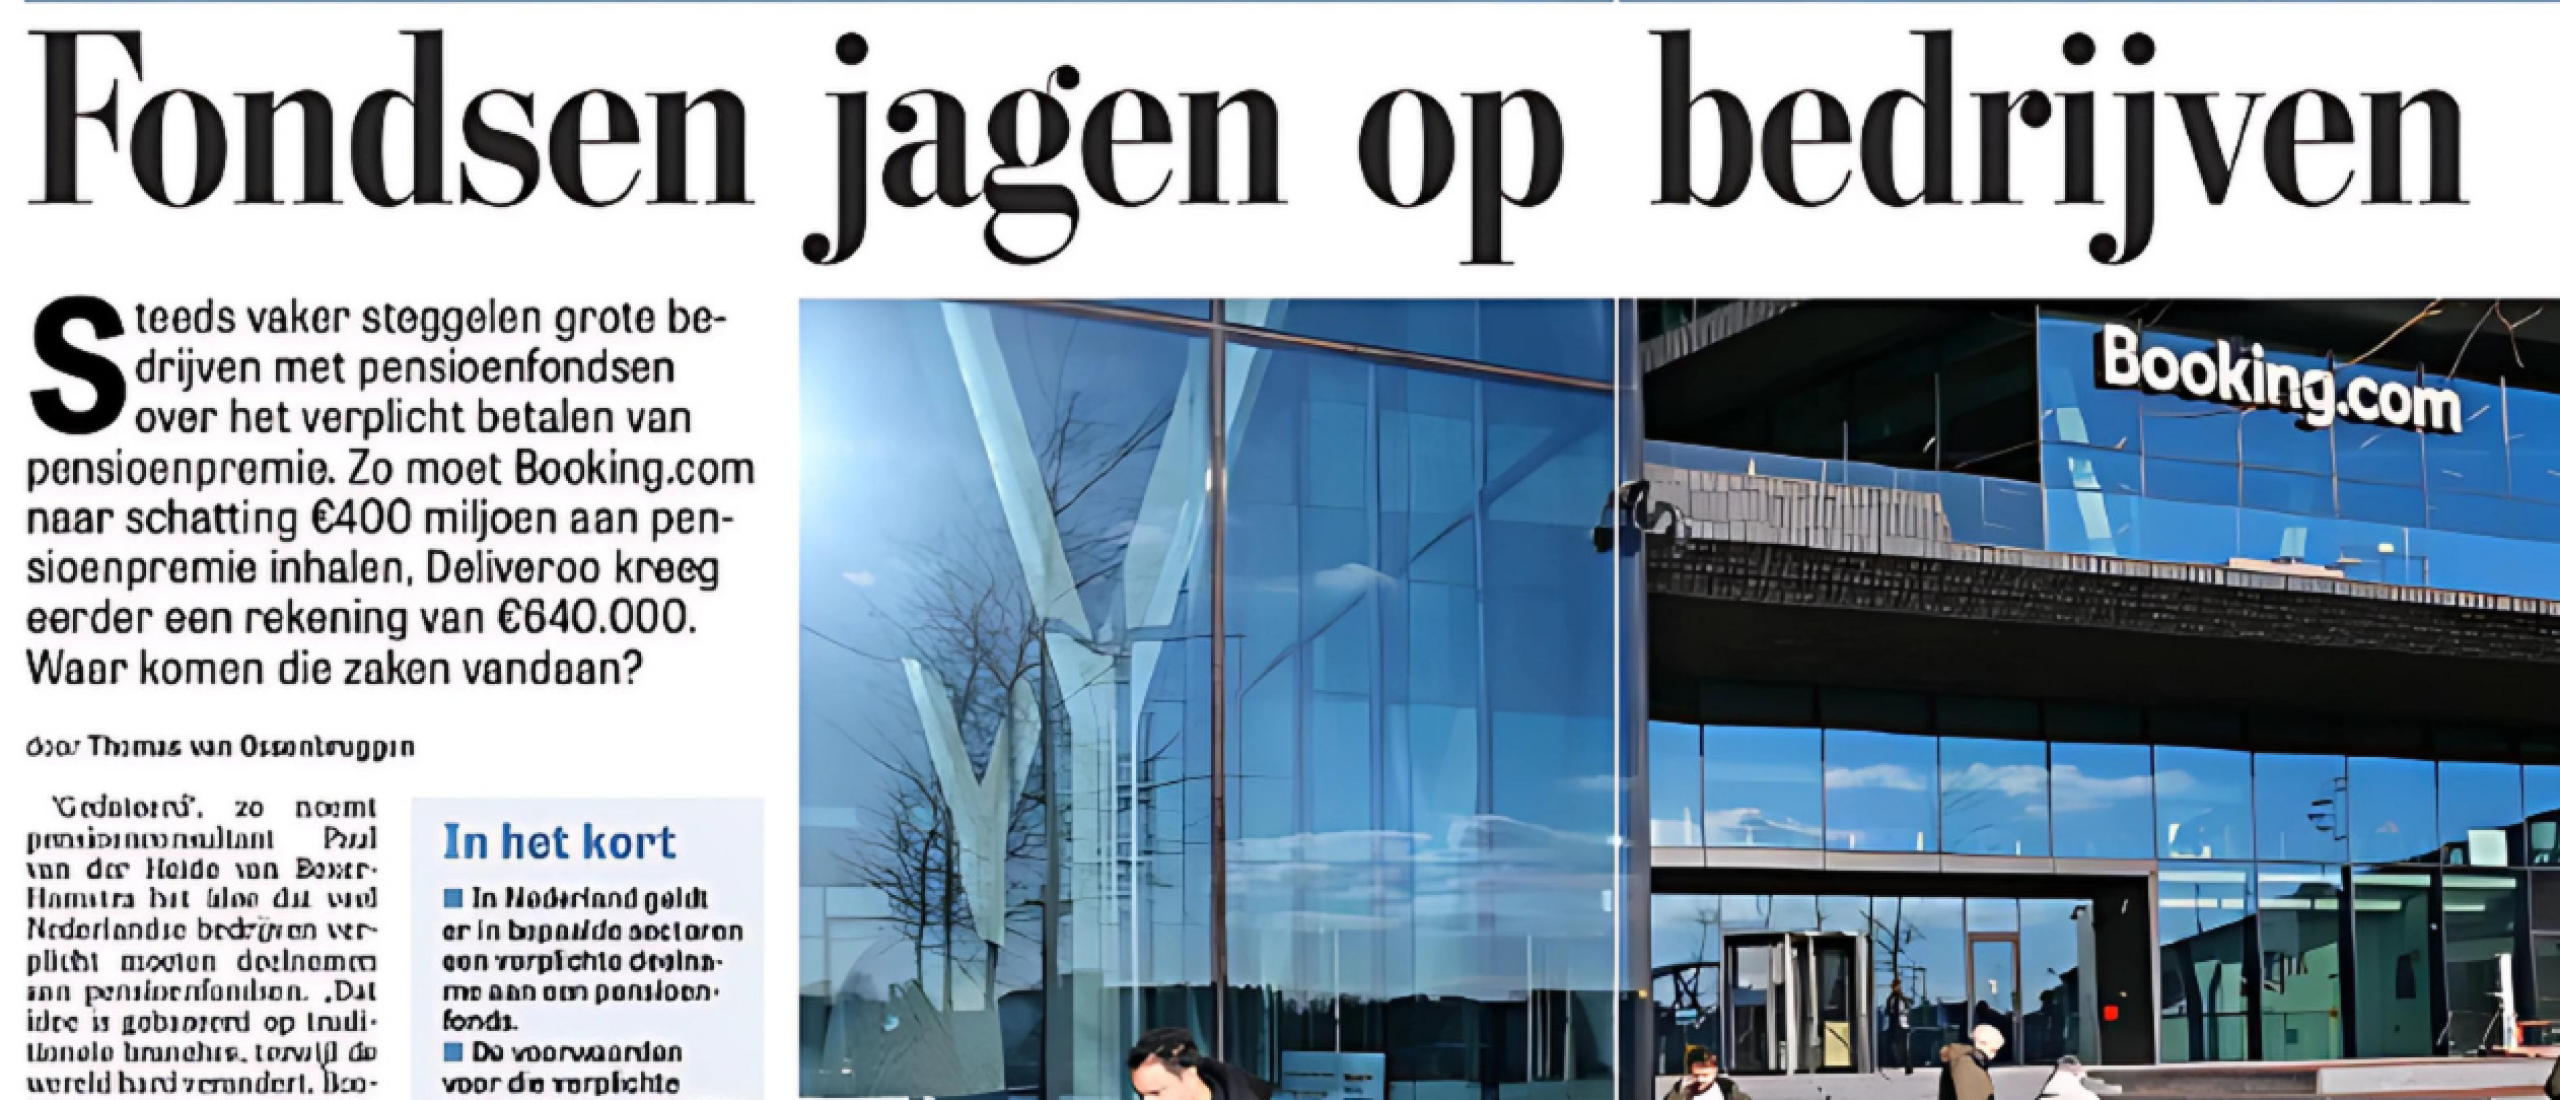 BPF-CAO in De Telegraaf over verplicht pensioen